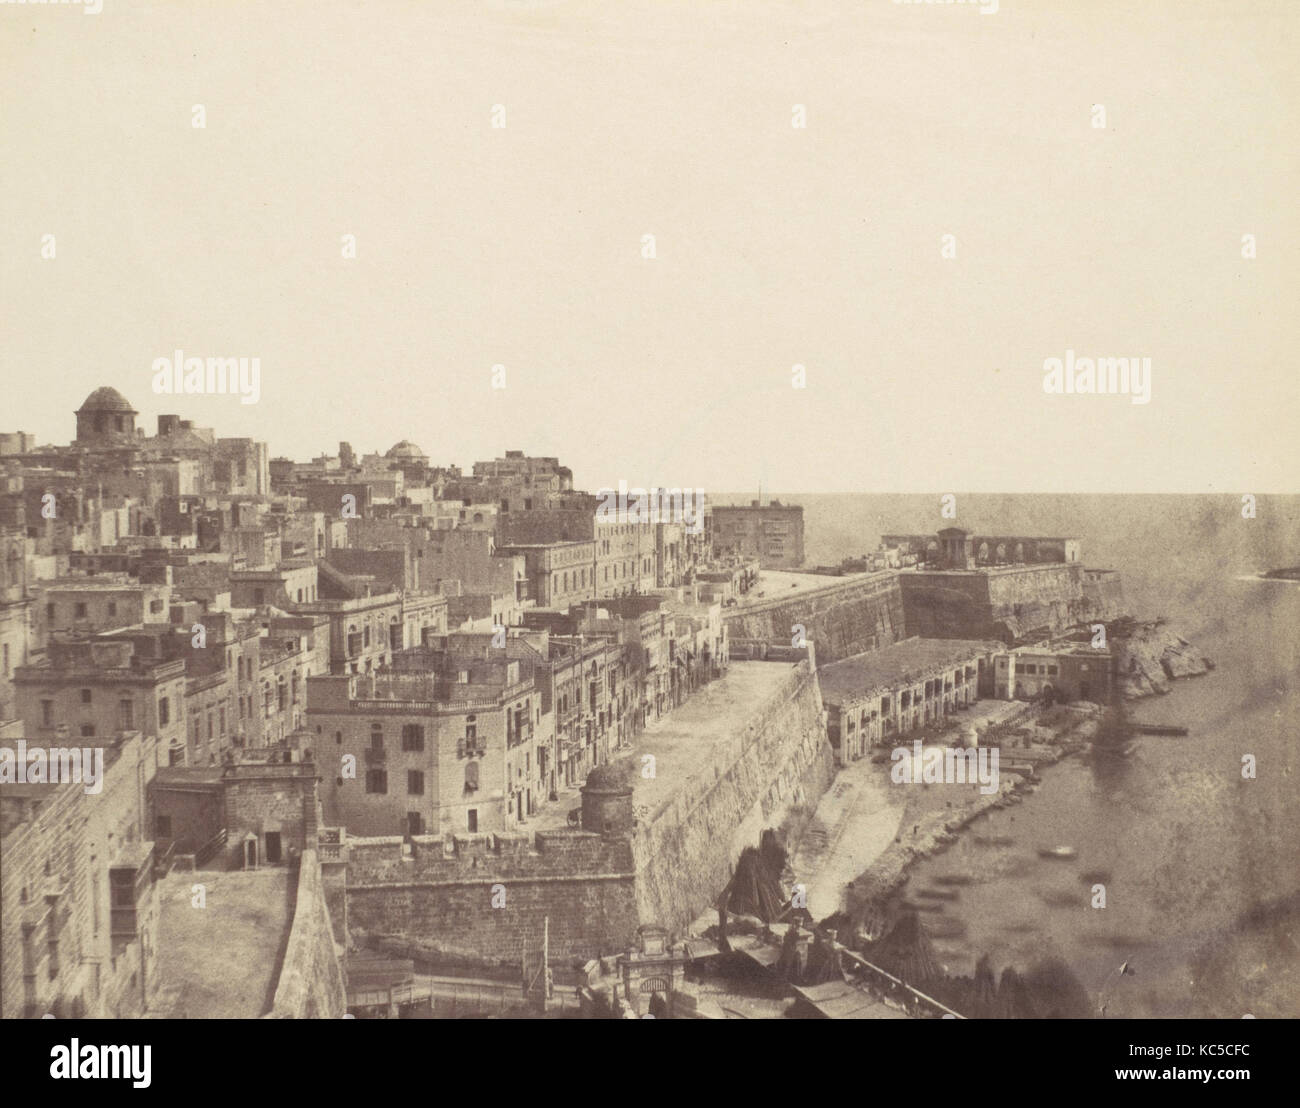 The Harbor at Valletta, Malta, Attributed to Calvert Richard Jones, 1850s Stock Photo